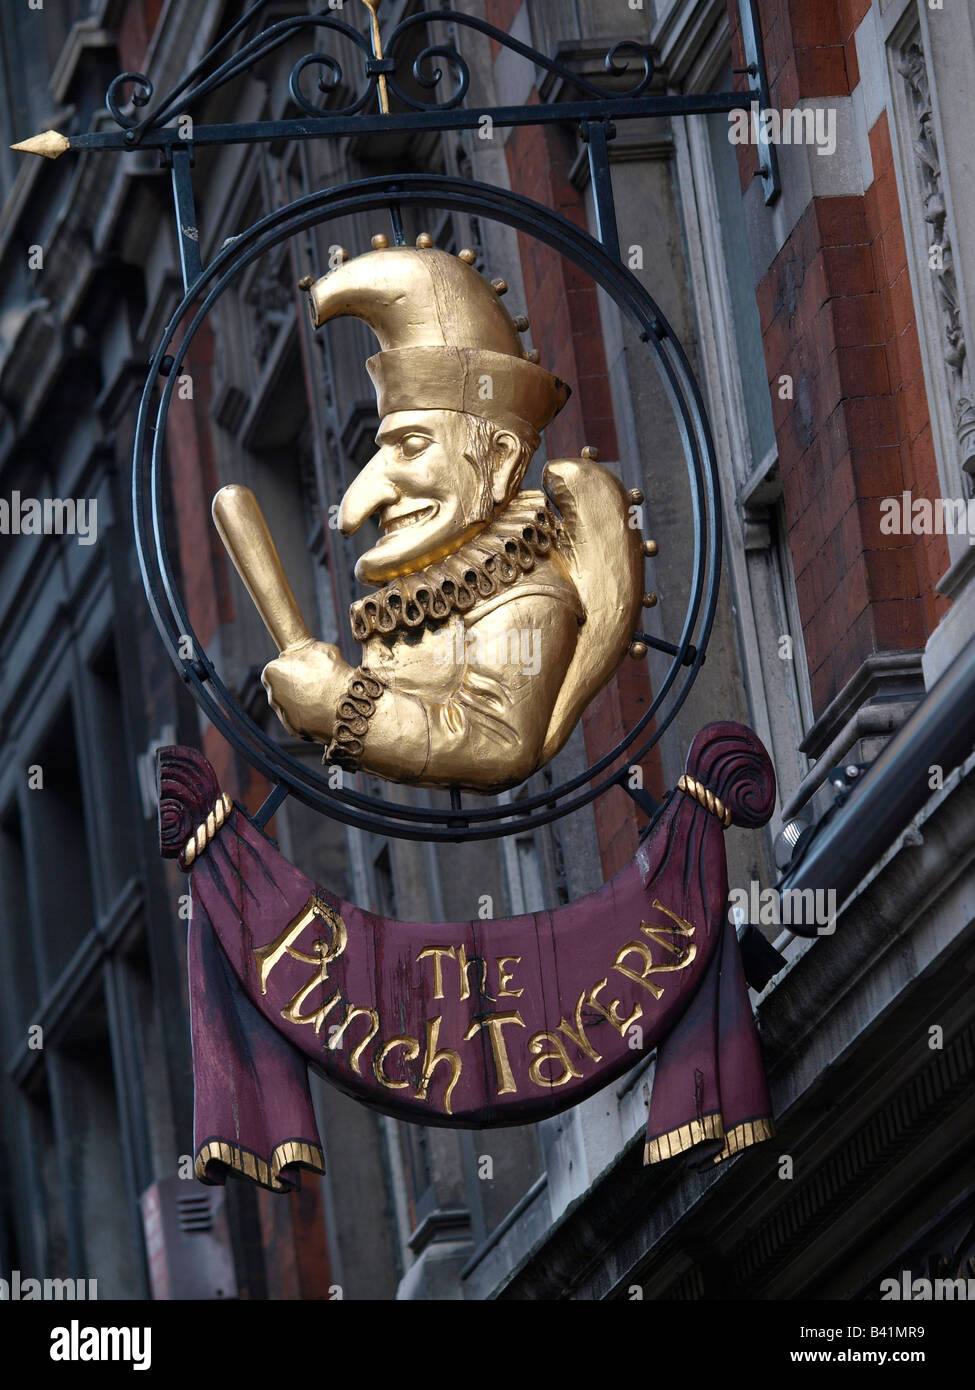 Punch doré tavern enseigne de pub Street London UK La Flotte Banque D'Images